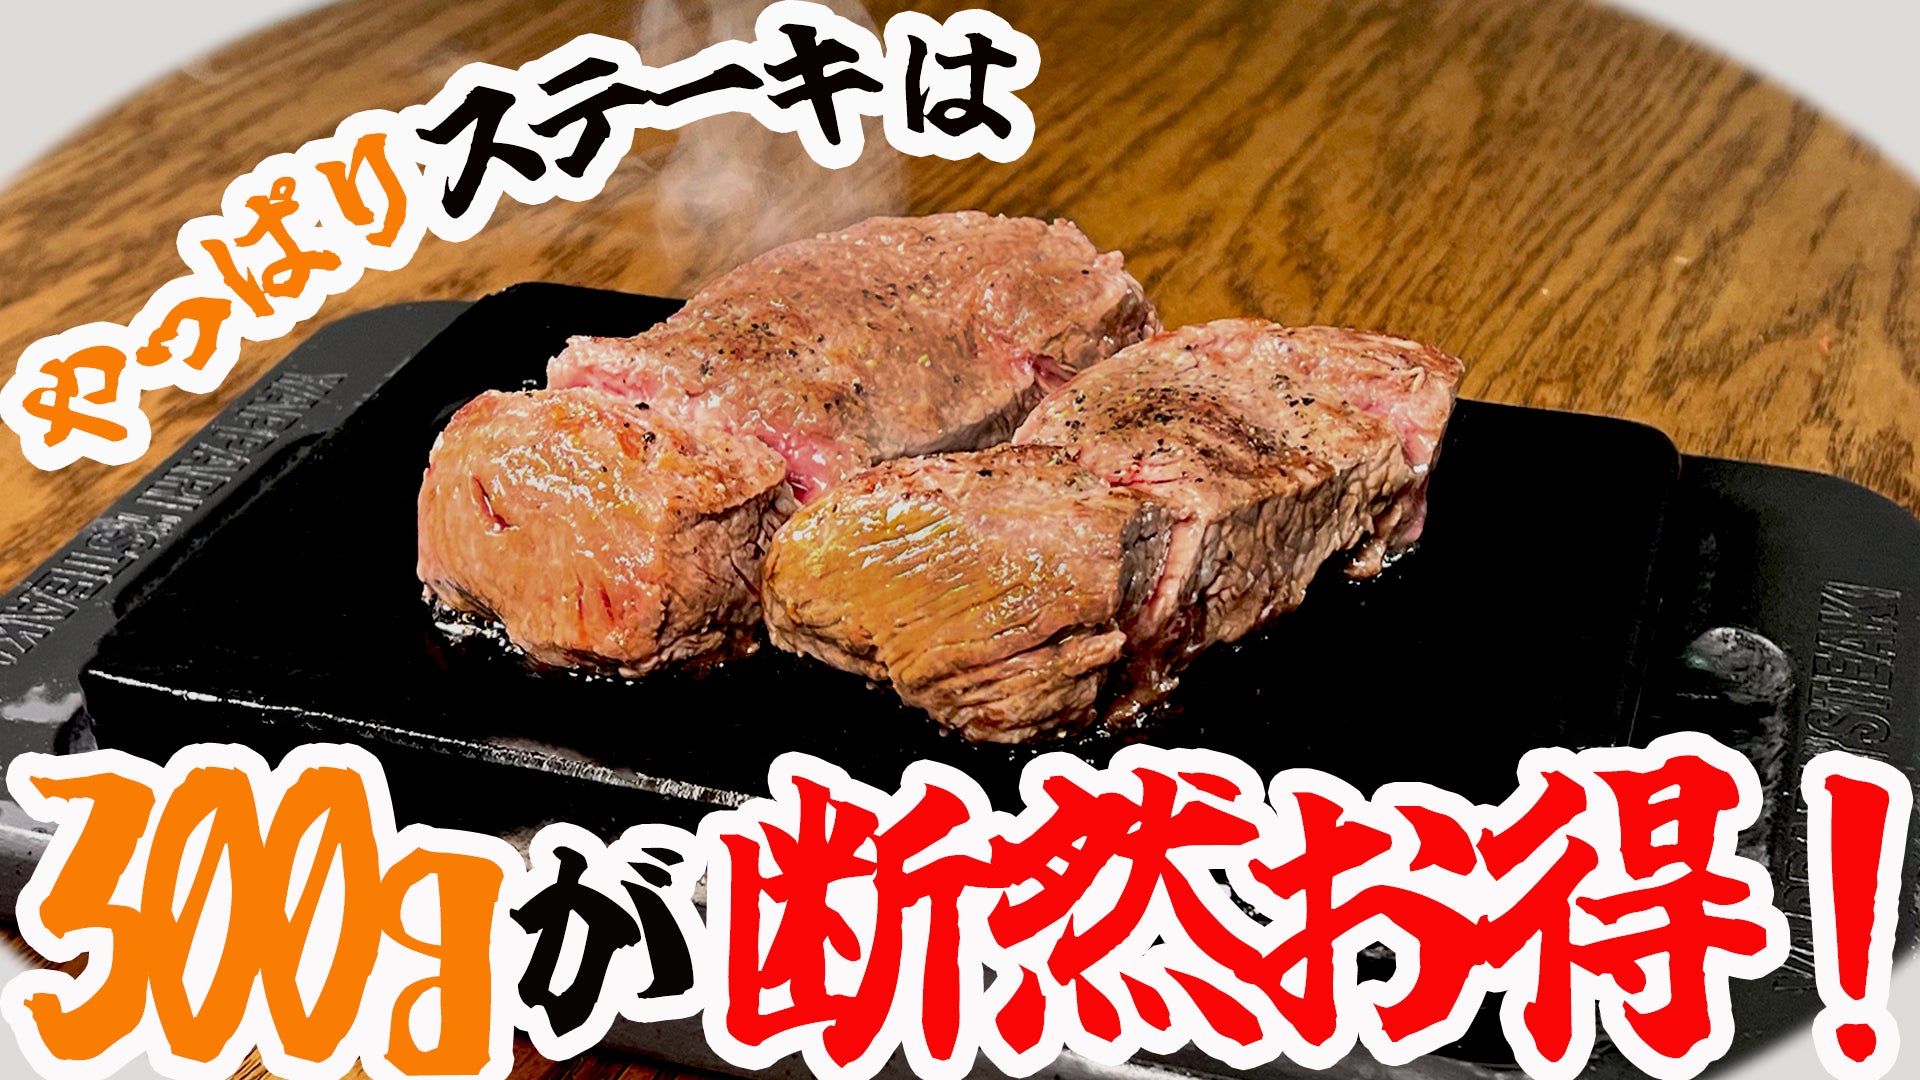 【松屋】食欲の秋に”ごはん泥棒”な味わいを「豚と茄子の辛味噌炒め」発売